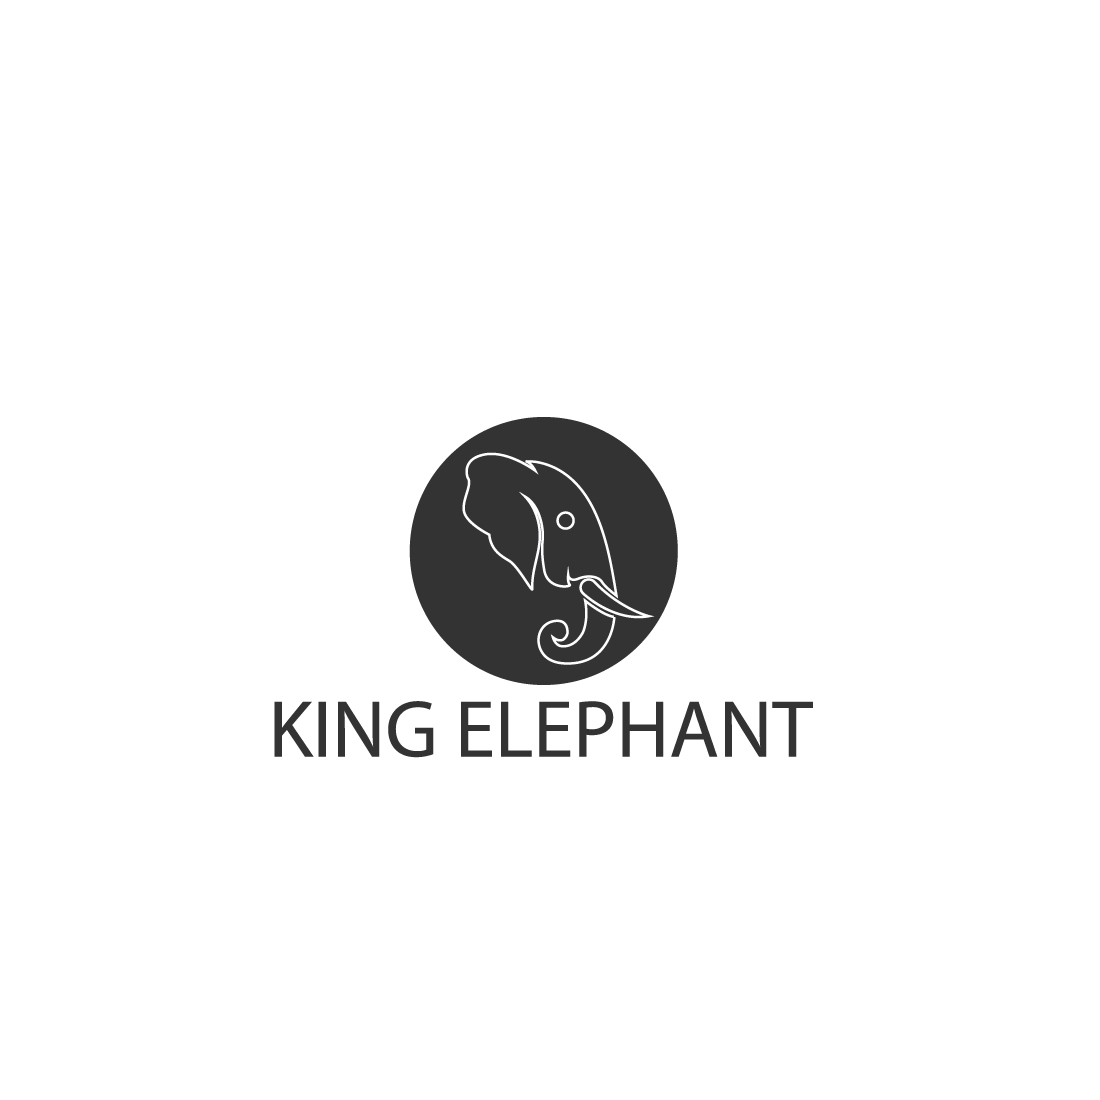 Elephant Minimal Logo cover image.